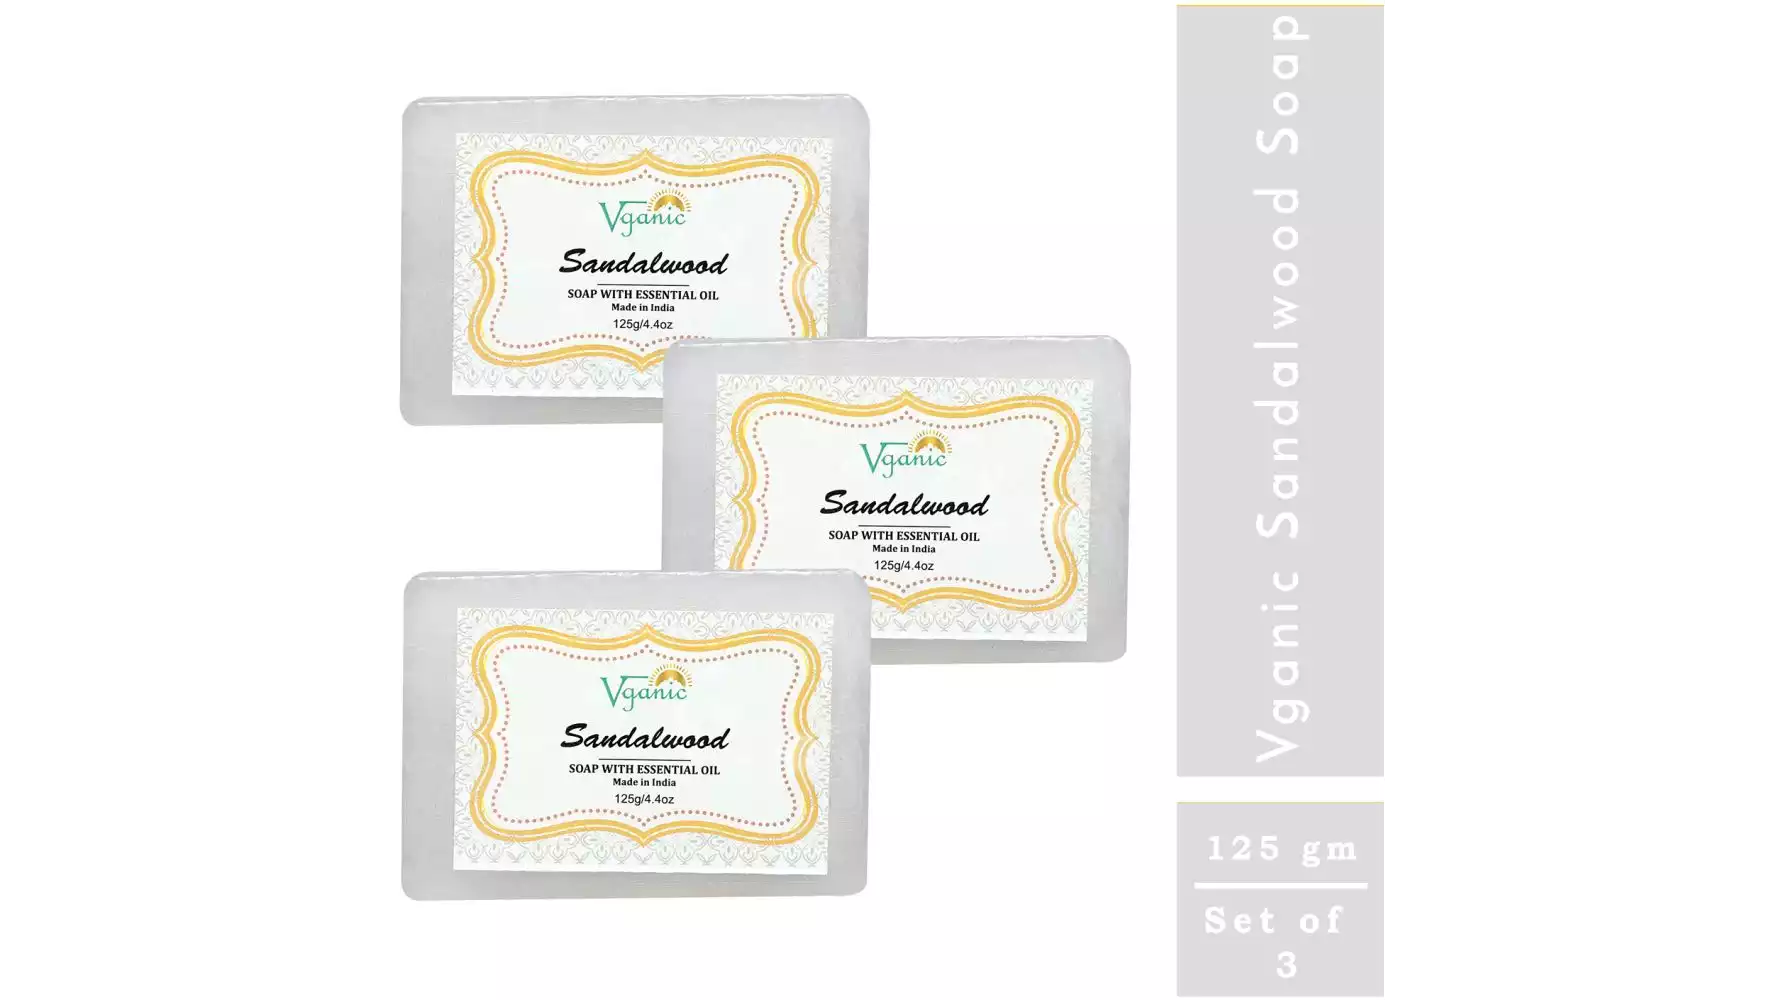 Vganic Sandalwood Soap (125g, Pack of 3)